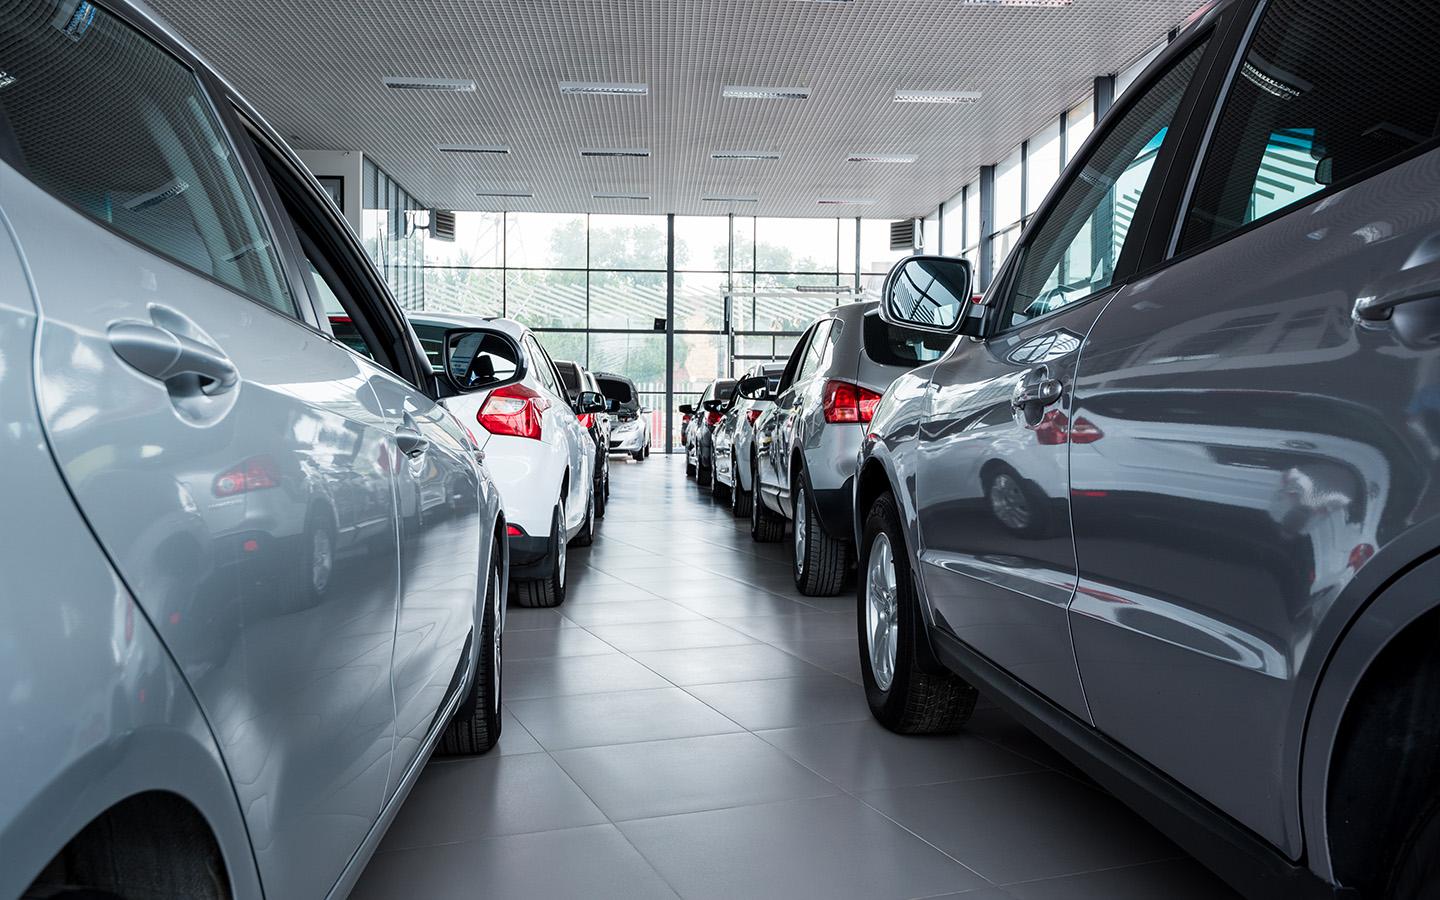 Аналитики сообщили о снижении средней цены нового автомобиля до ₽3,5 млн